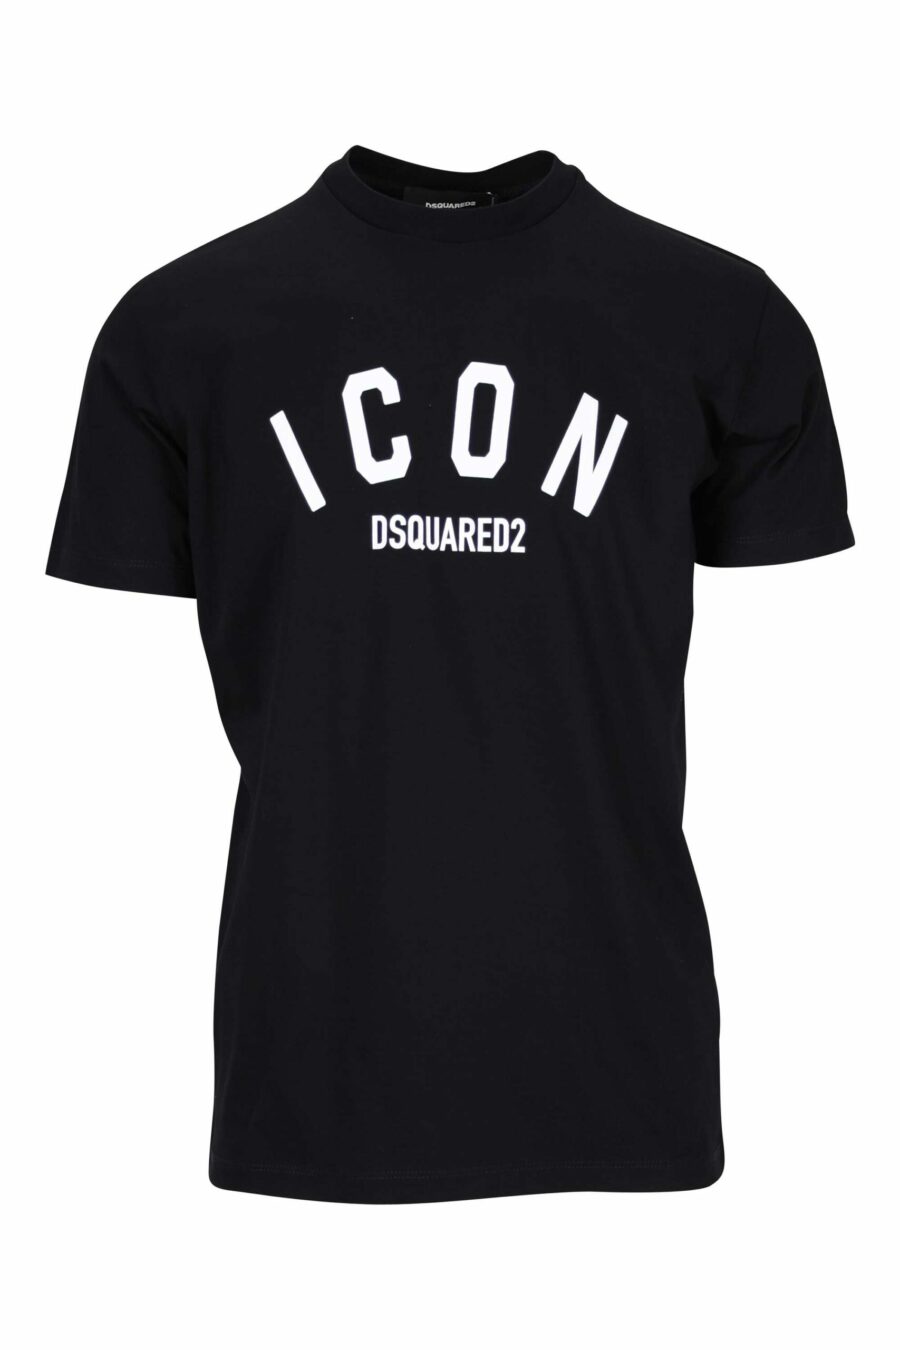 Schwarzes T-Shirt mit gefaltetem "Icon"-Logo - 8054148400989 skaliert